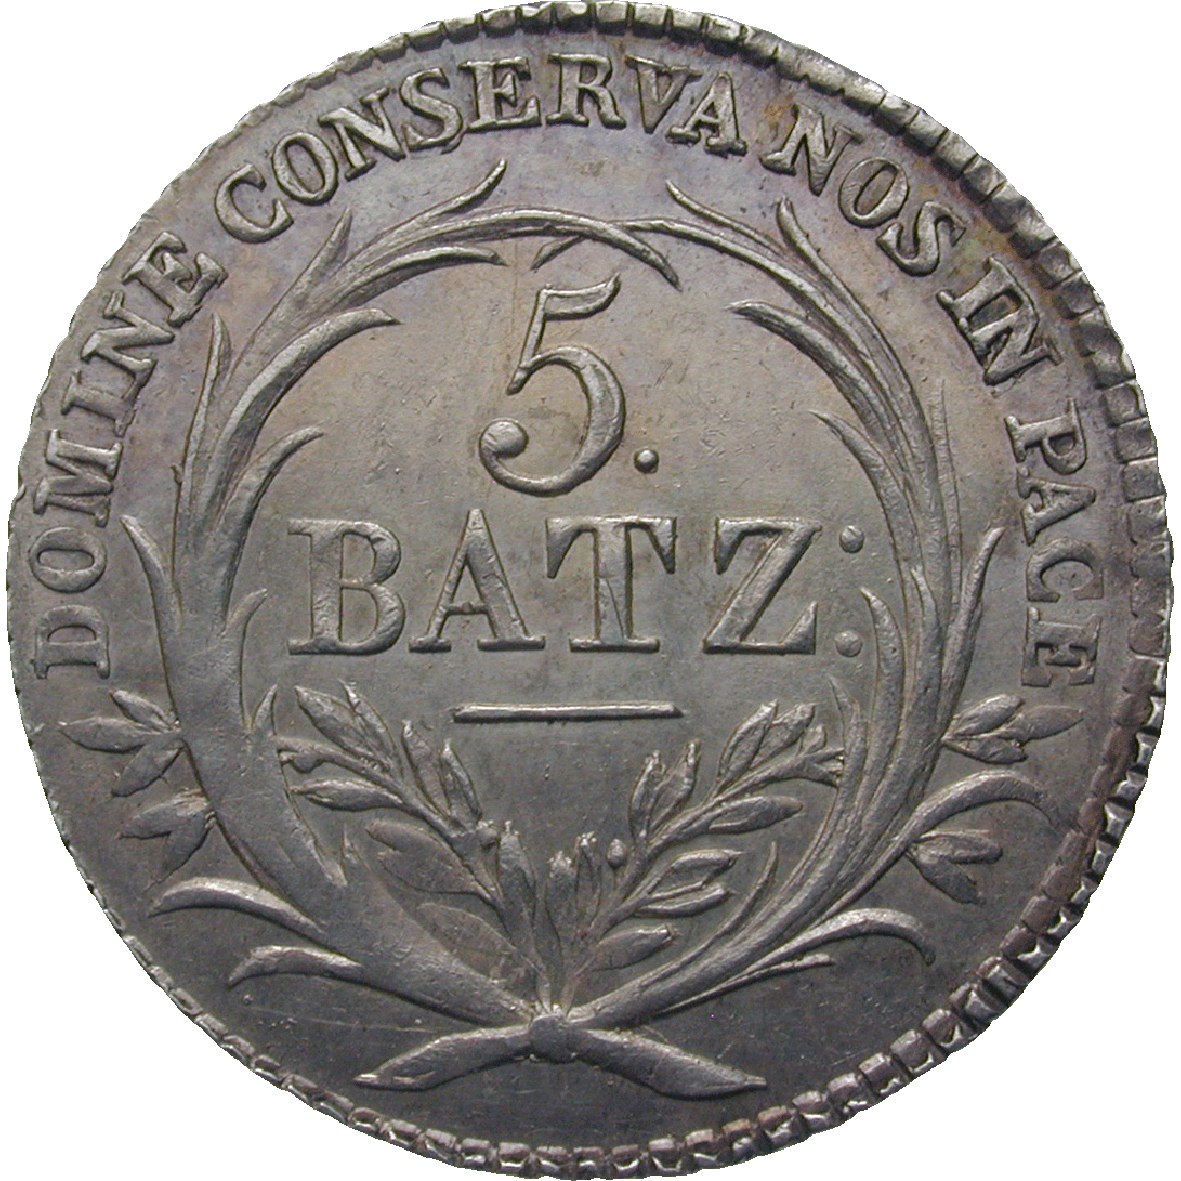 Kanton Luzern, 5 Batzen 1815 (reverse)